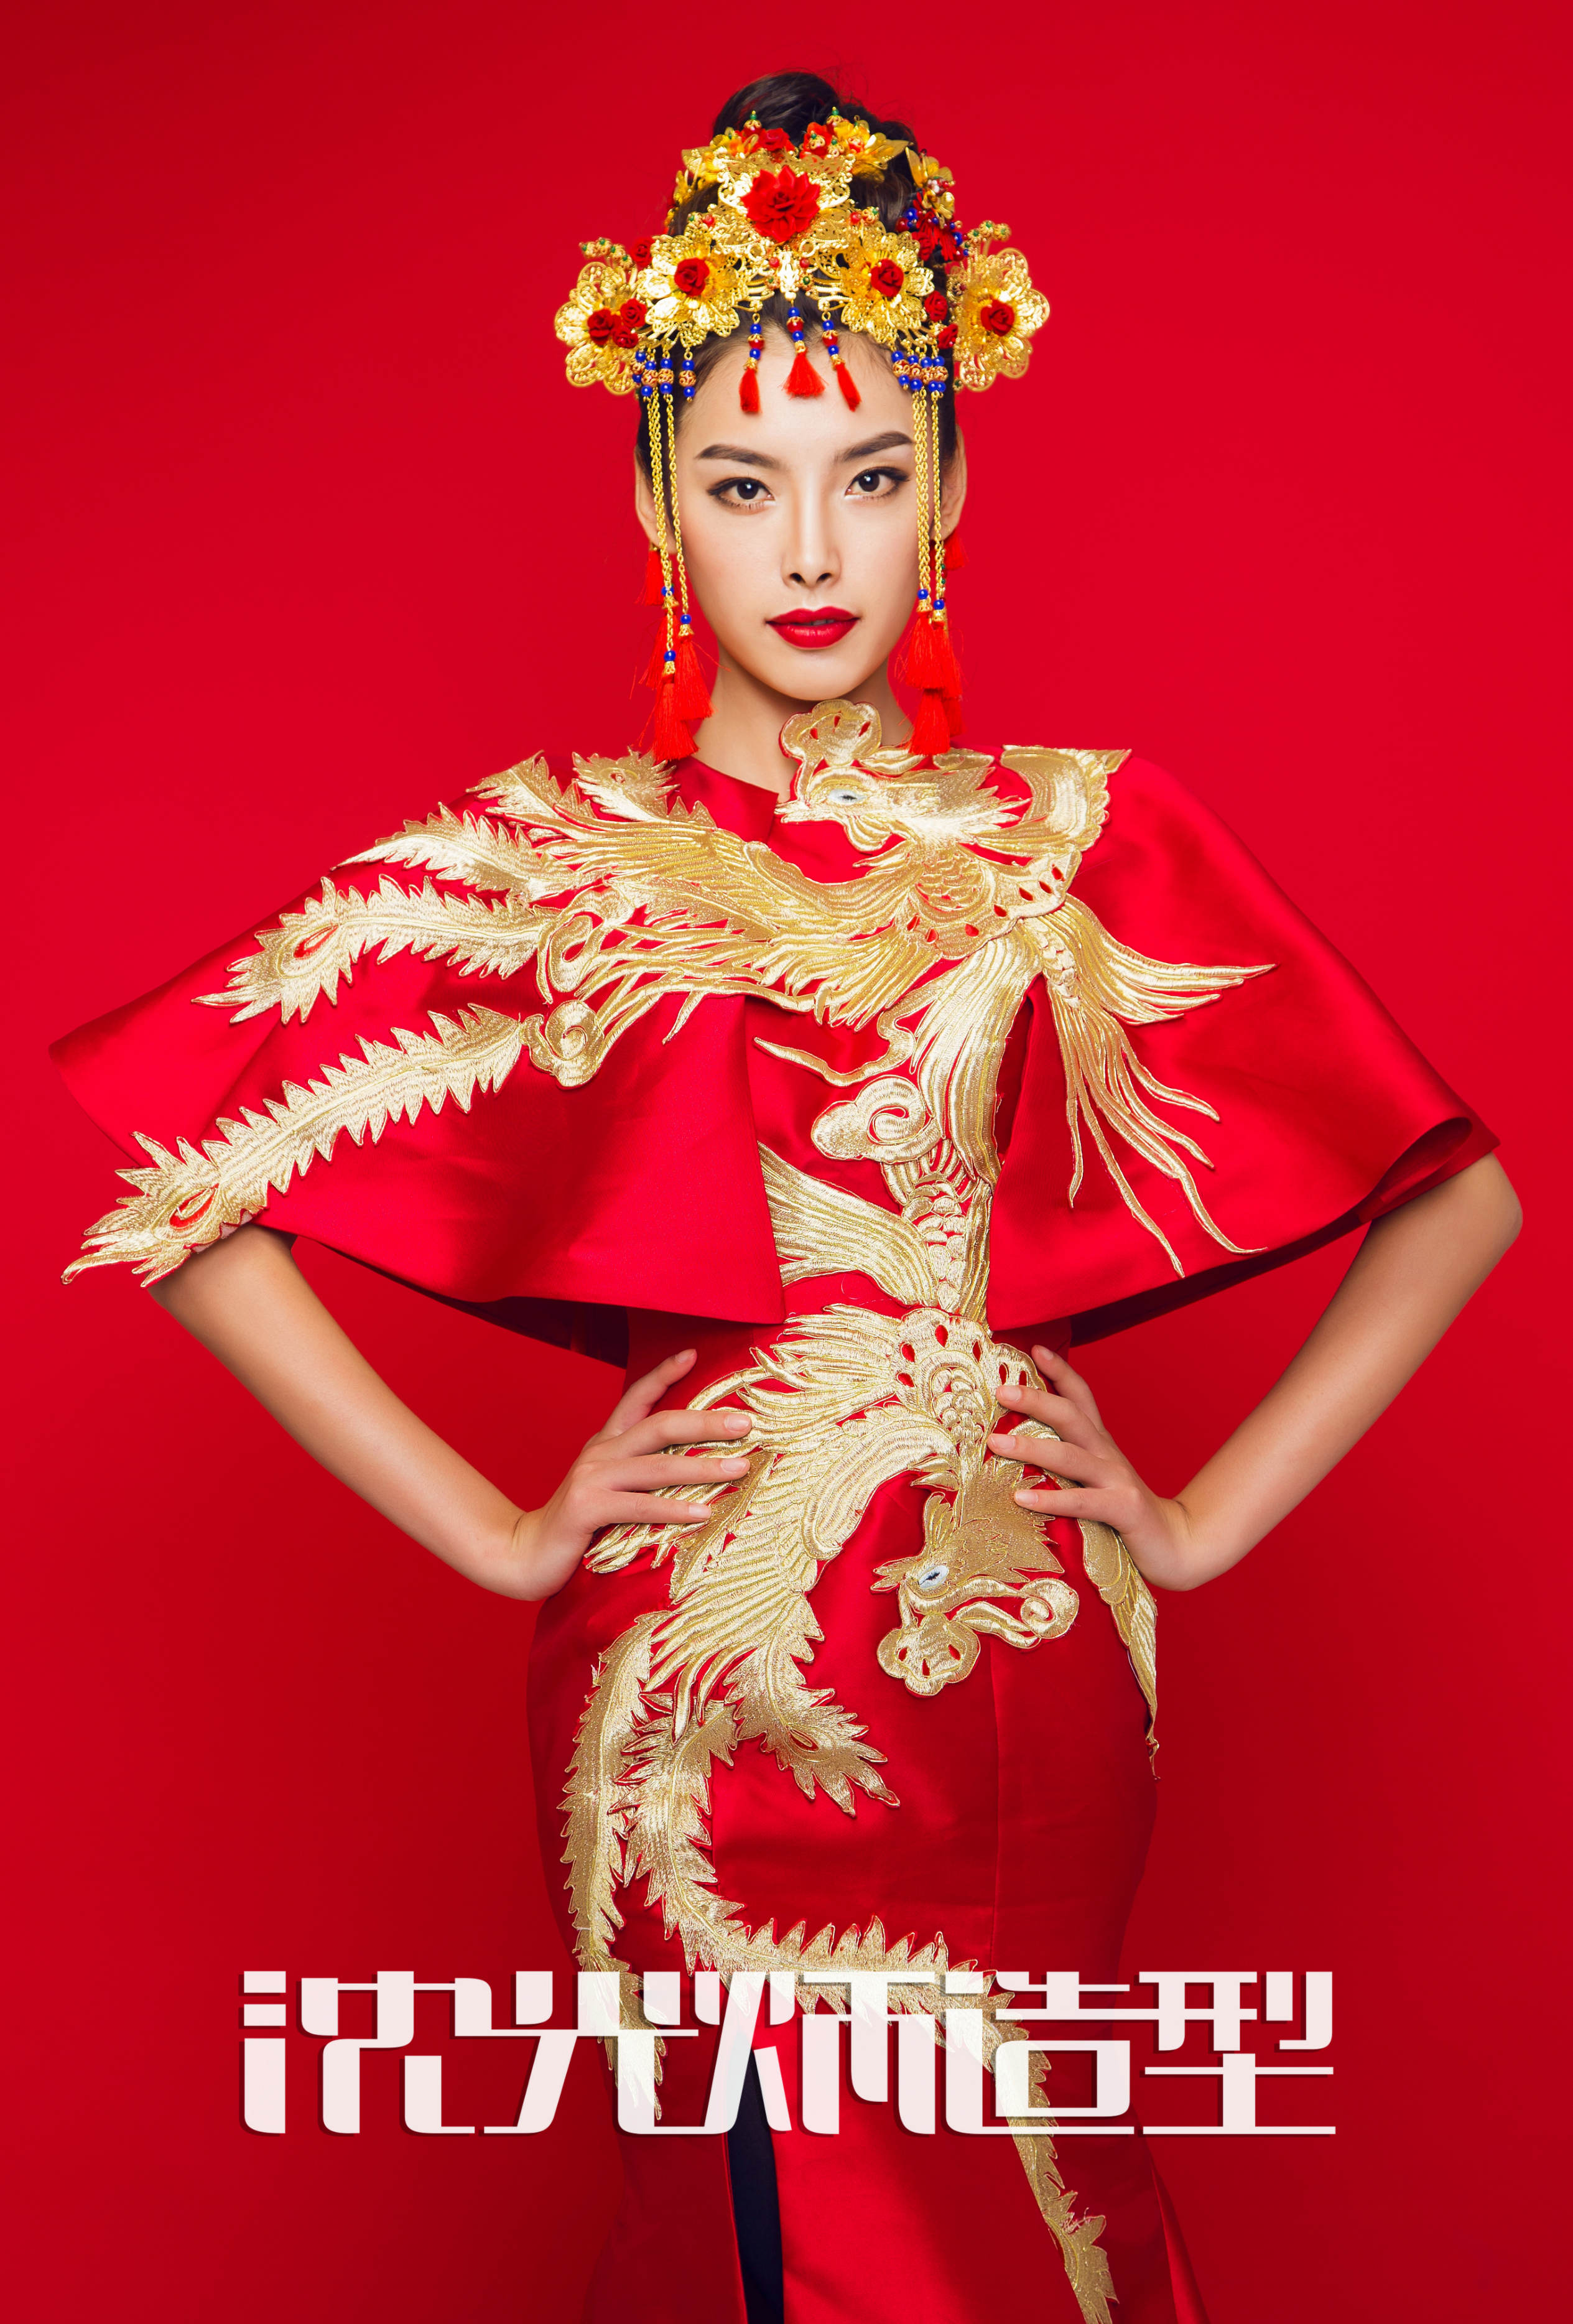 中国风化妆新娘盘发造型秀和头饰工艺作品